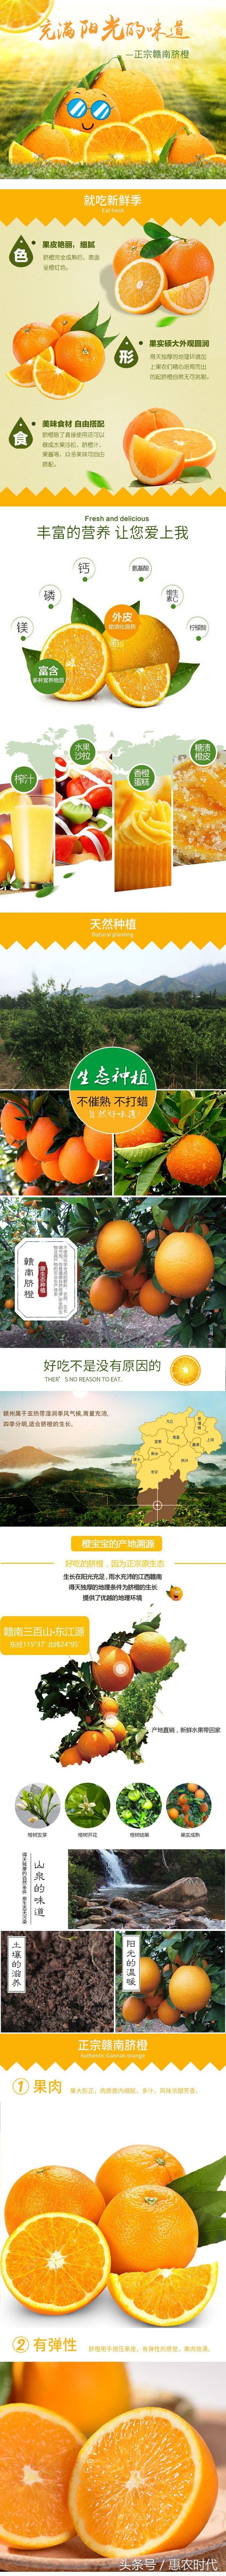 江西赣州·脐橙